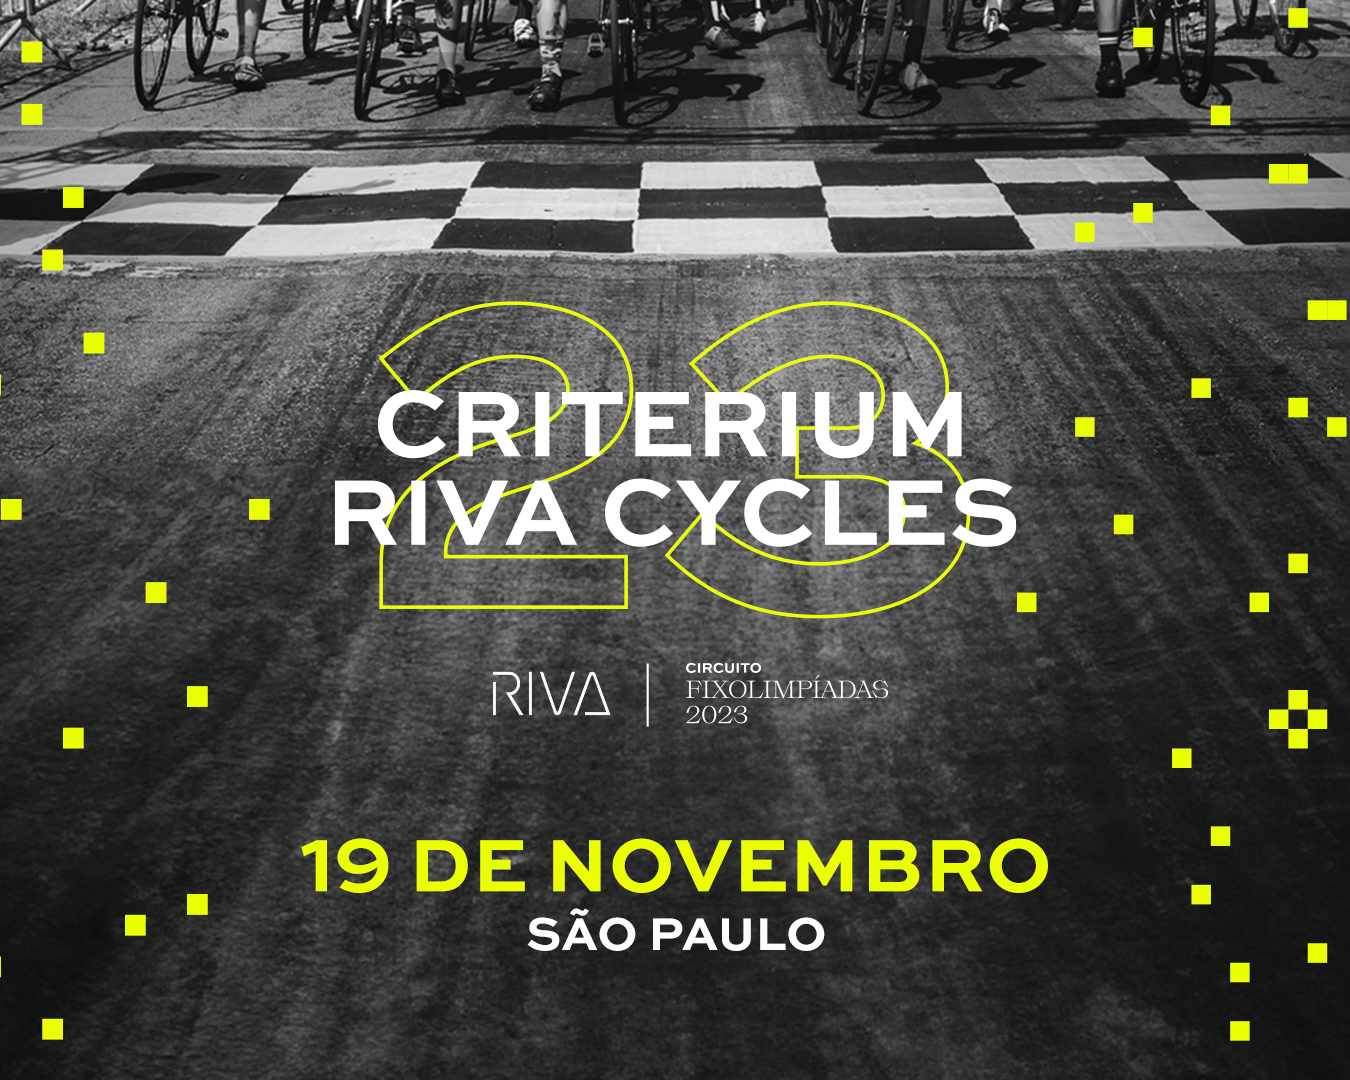 Criterium RIVA Cycles 2023